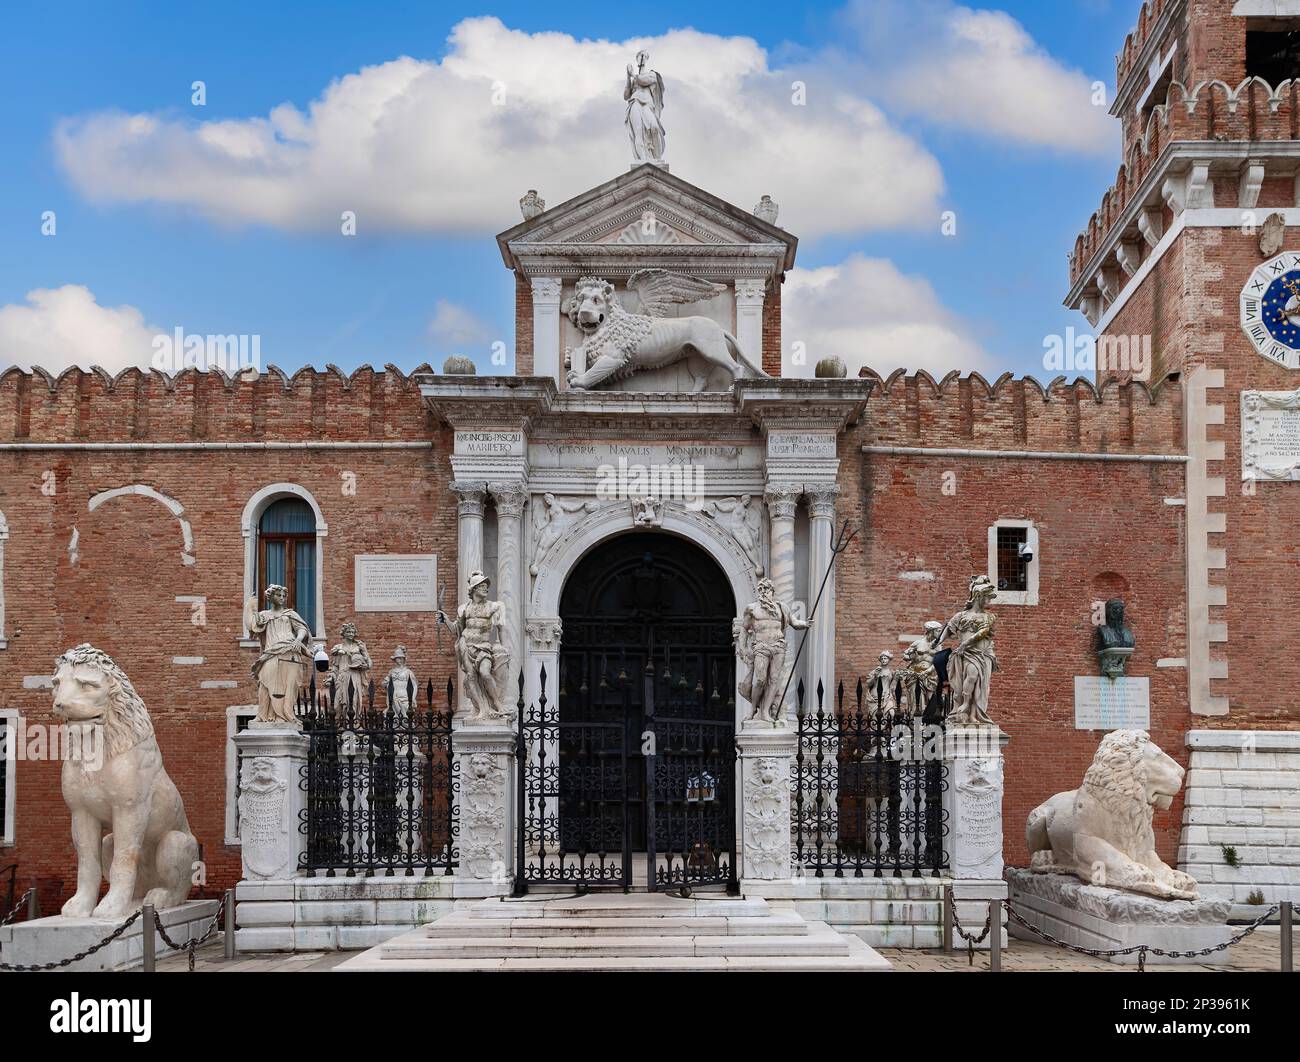 Reich dekoriert mit Statuen und Löwen, der Haupteingang zum venezianischen Arsenal- und Marinemuseum Stockfoto